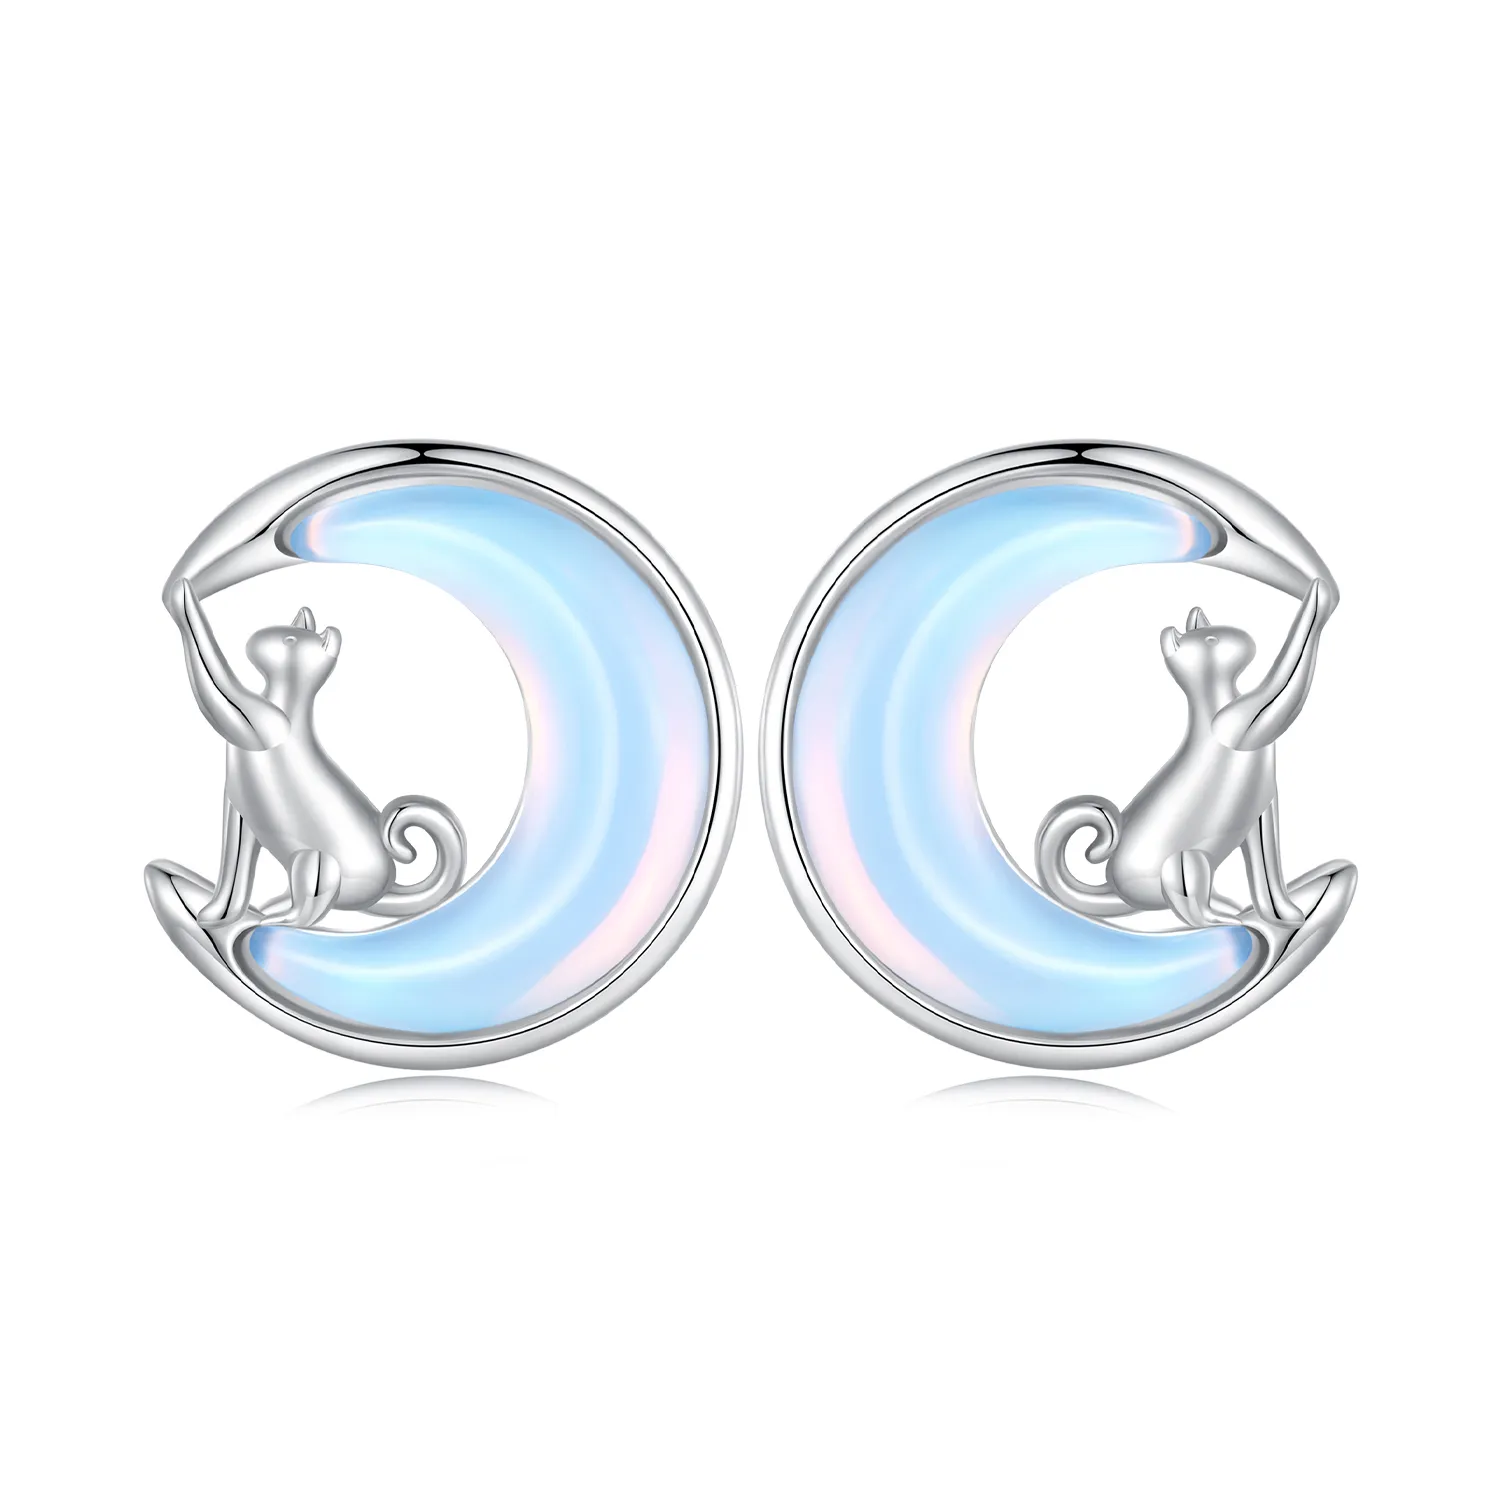 Pandora Style Moon Cat Studs Earrings - BSE913